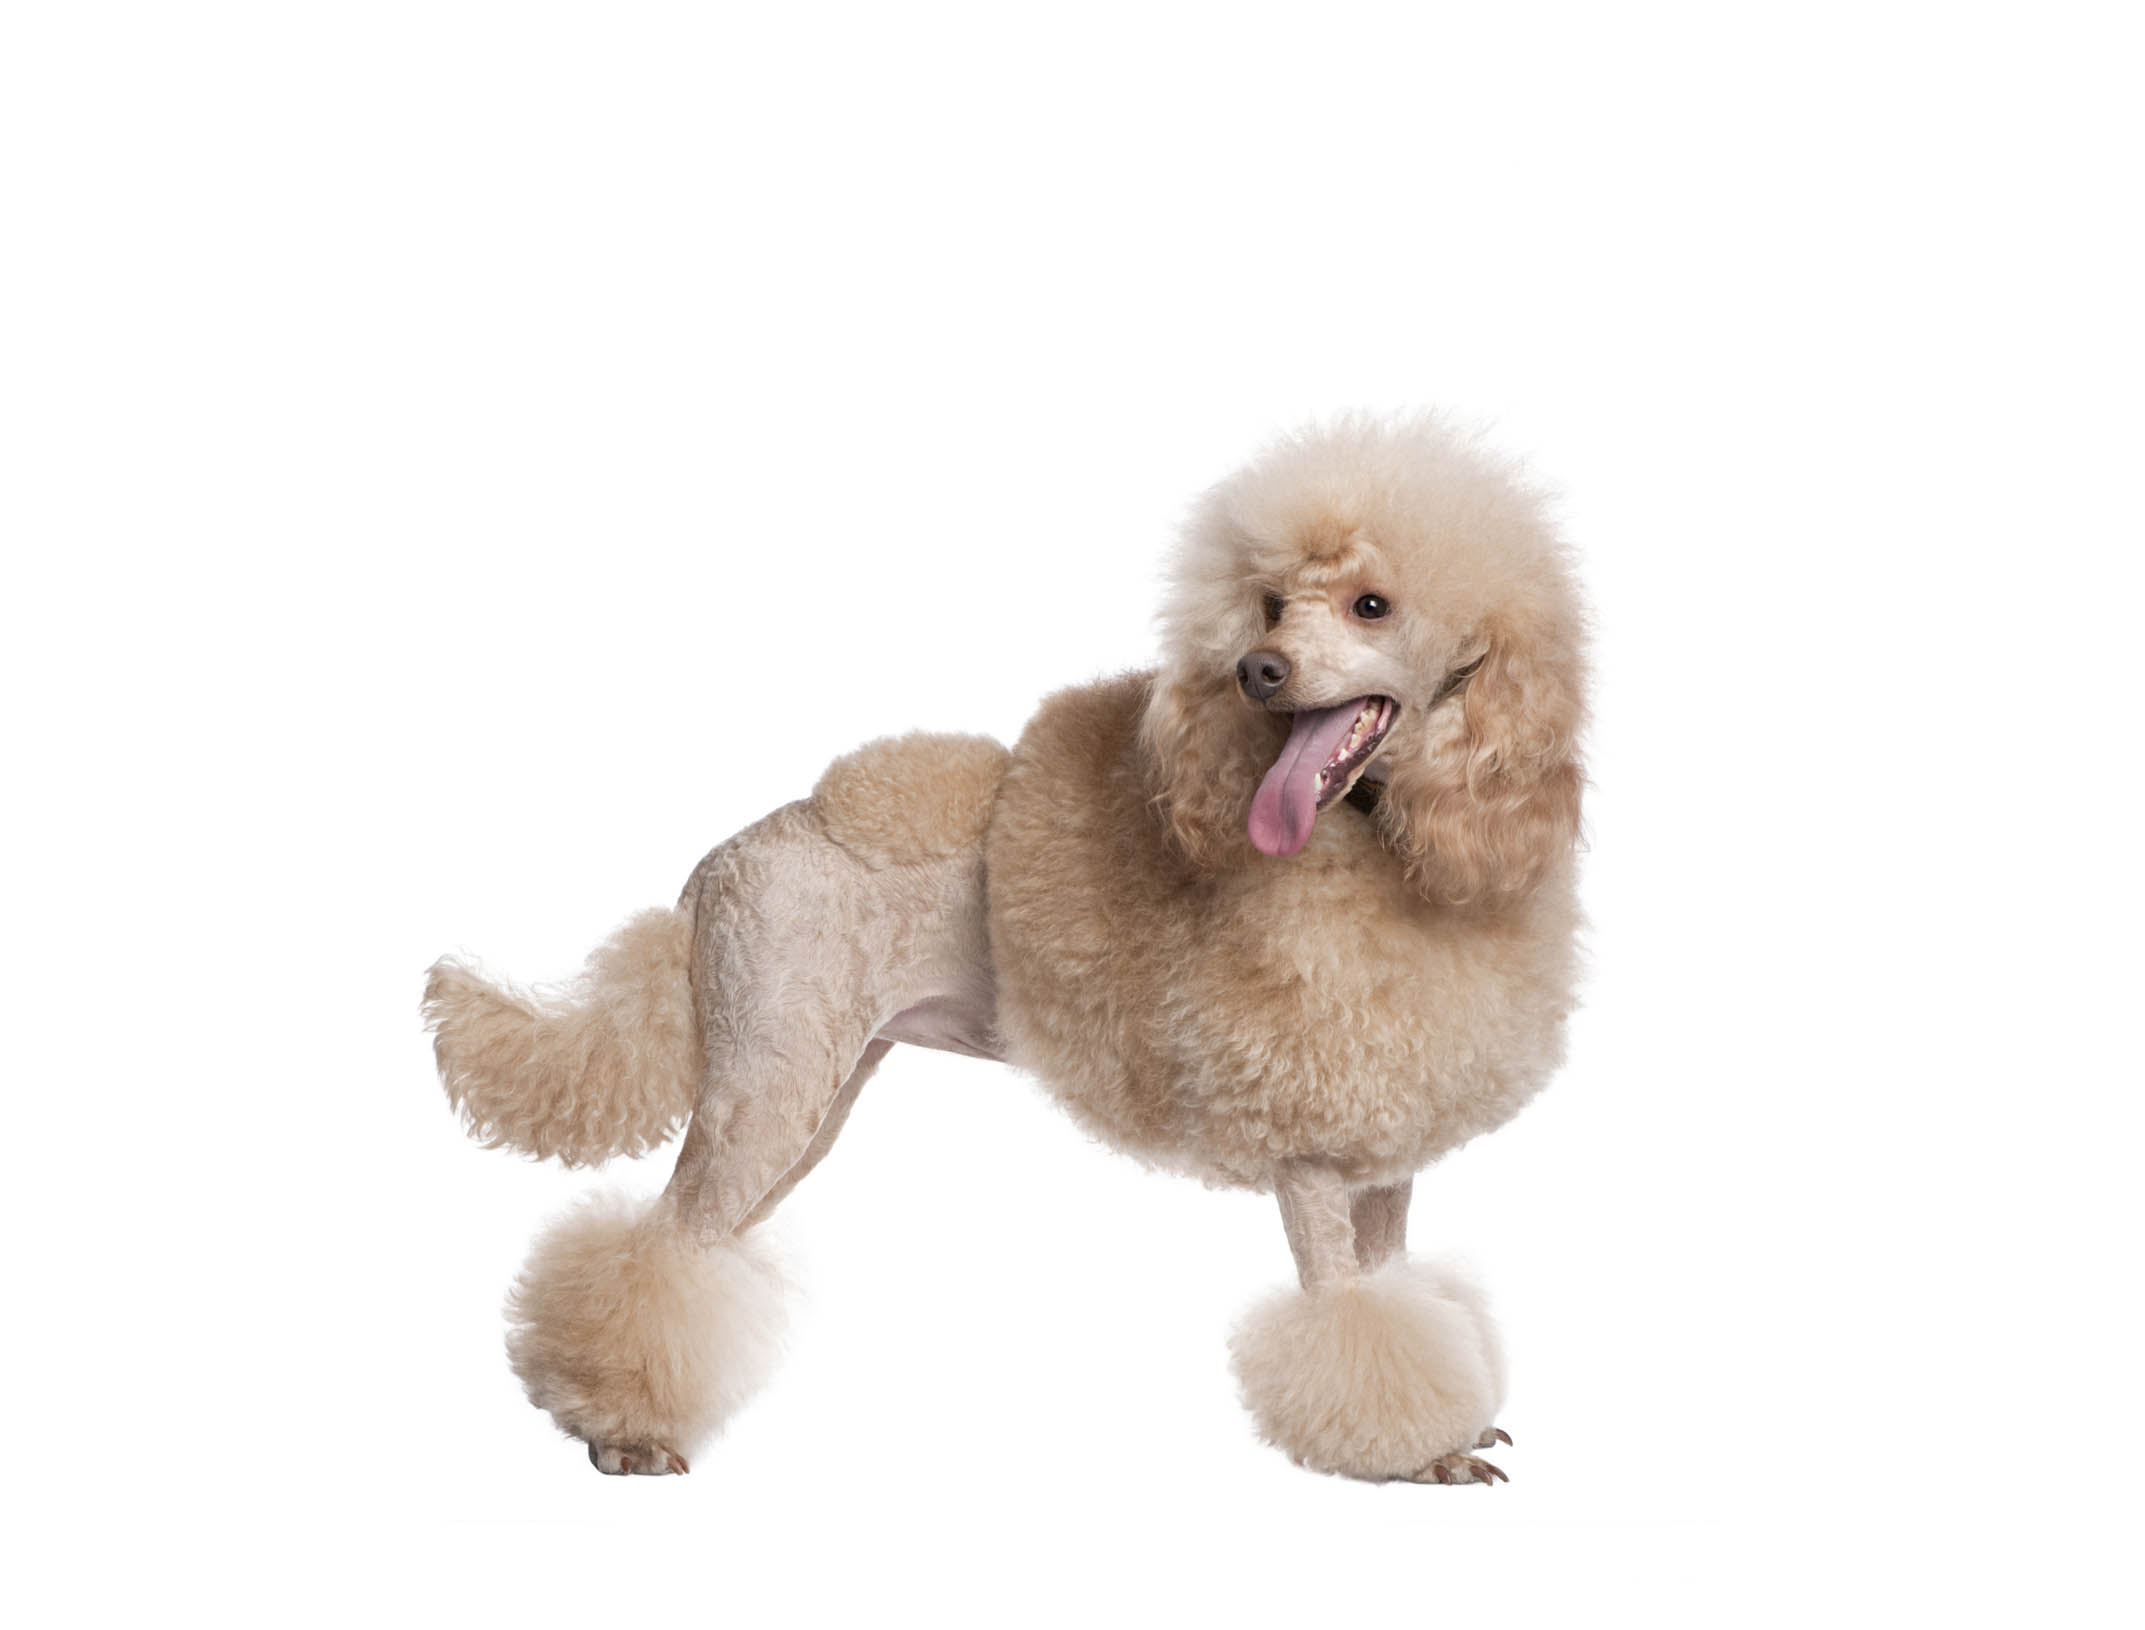 Para esta raza de canes existe una gran gama de cortes de pelo que lo harán lucir a la moda sin importar si su tamaño es toy, enano, mediano o gigante